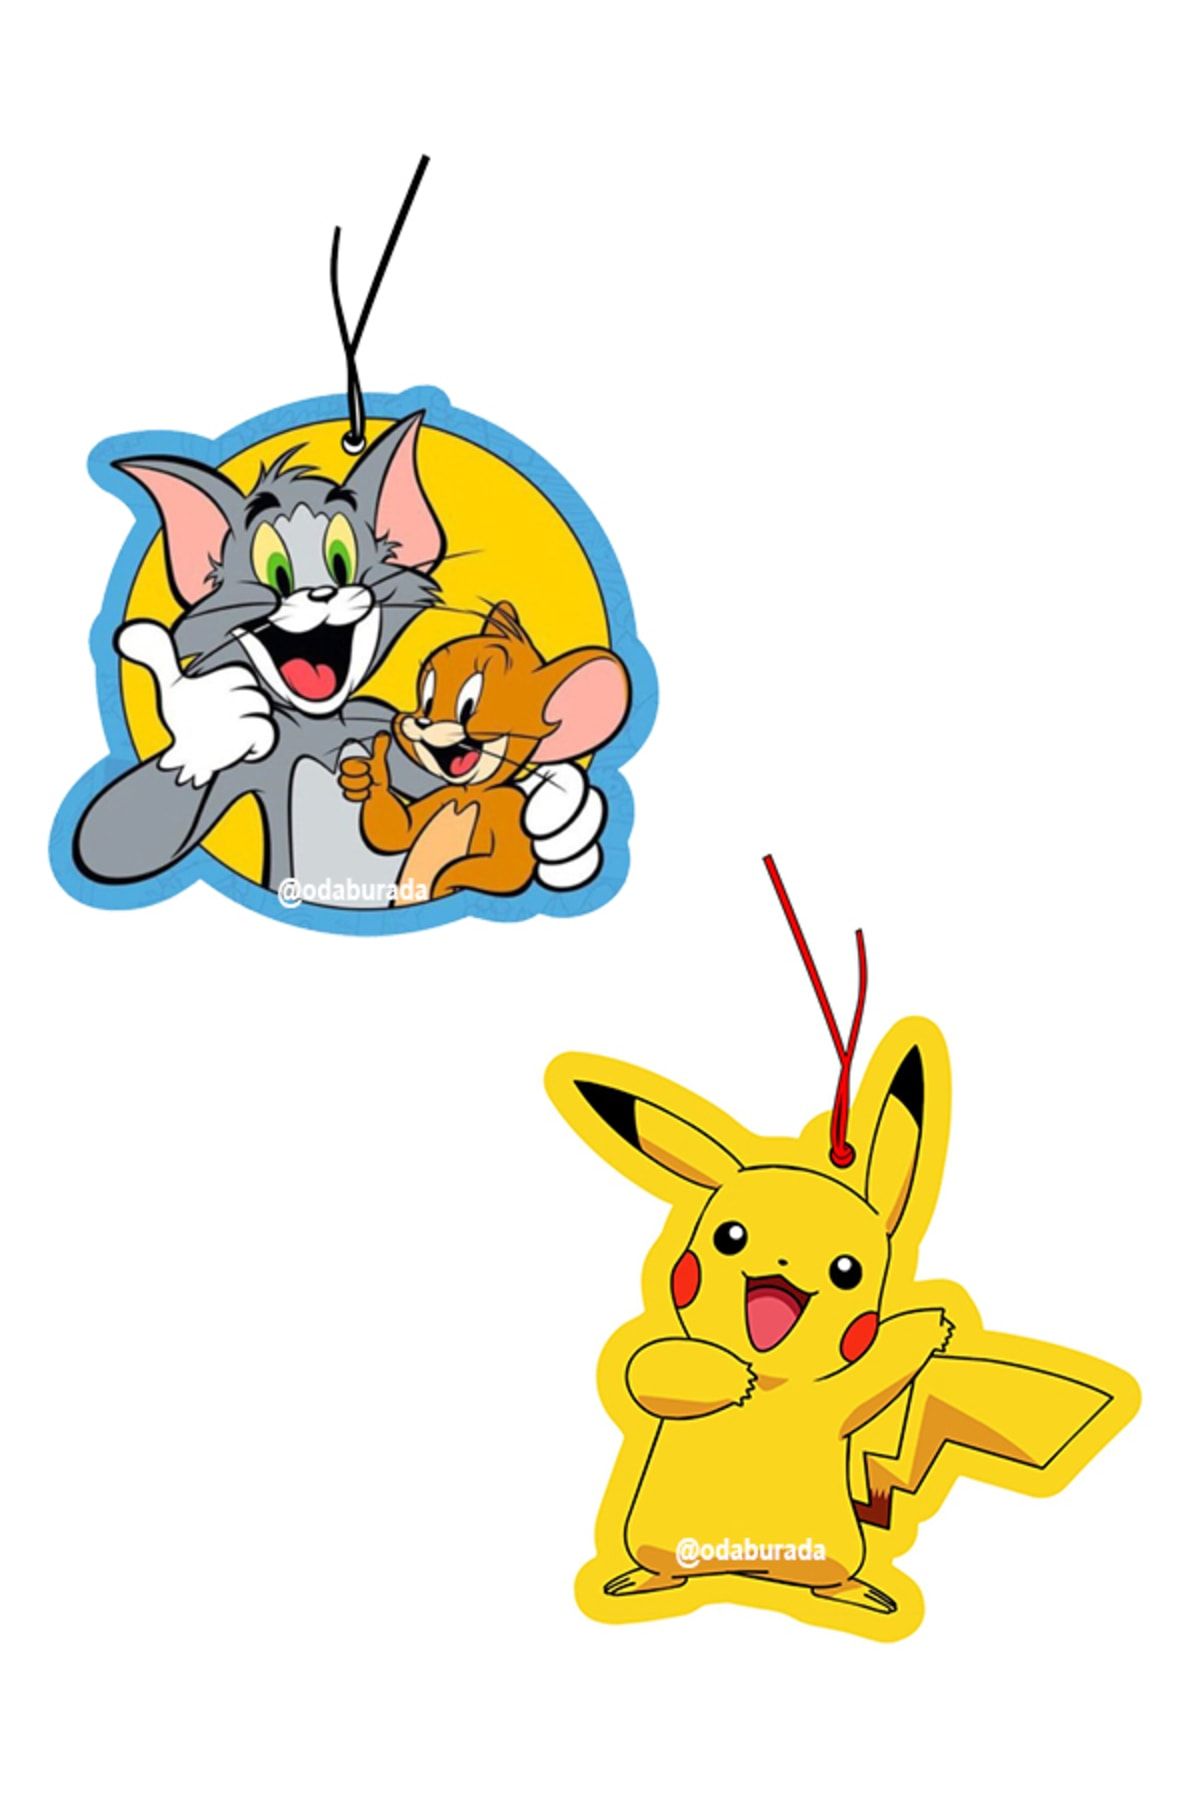 odaburada 2'li Tom&jerry Ve Pikachu Set Dekoratif Oto Kokusu Ve Aksesuarı